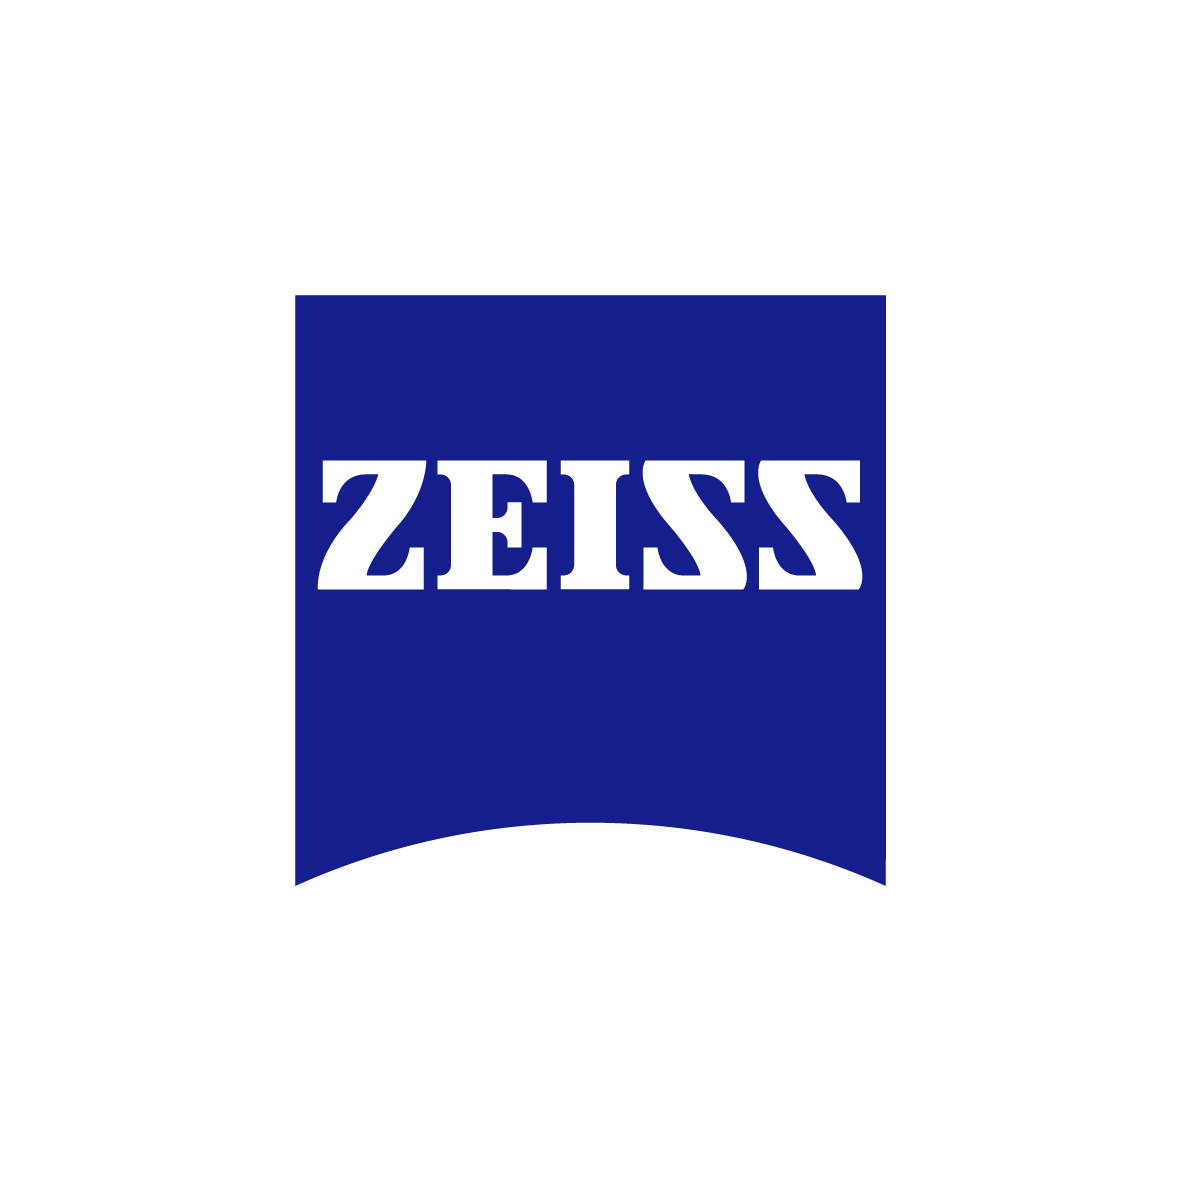 zeiss logo rgb